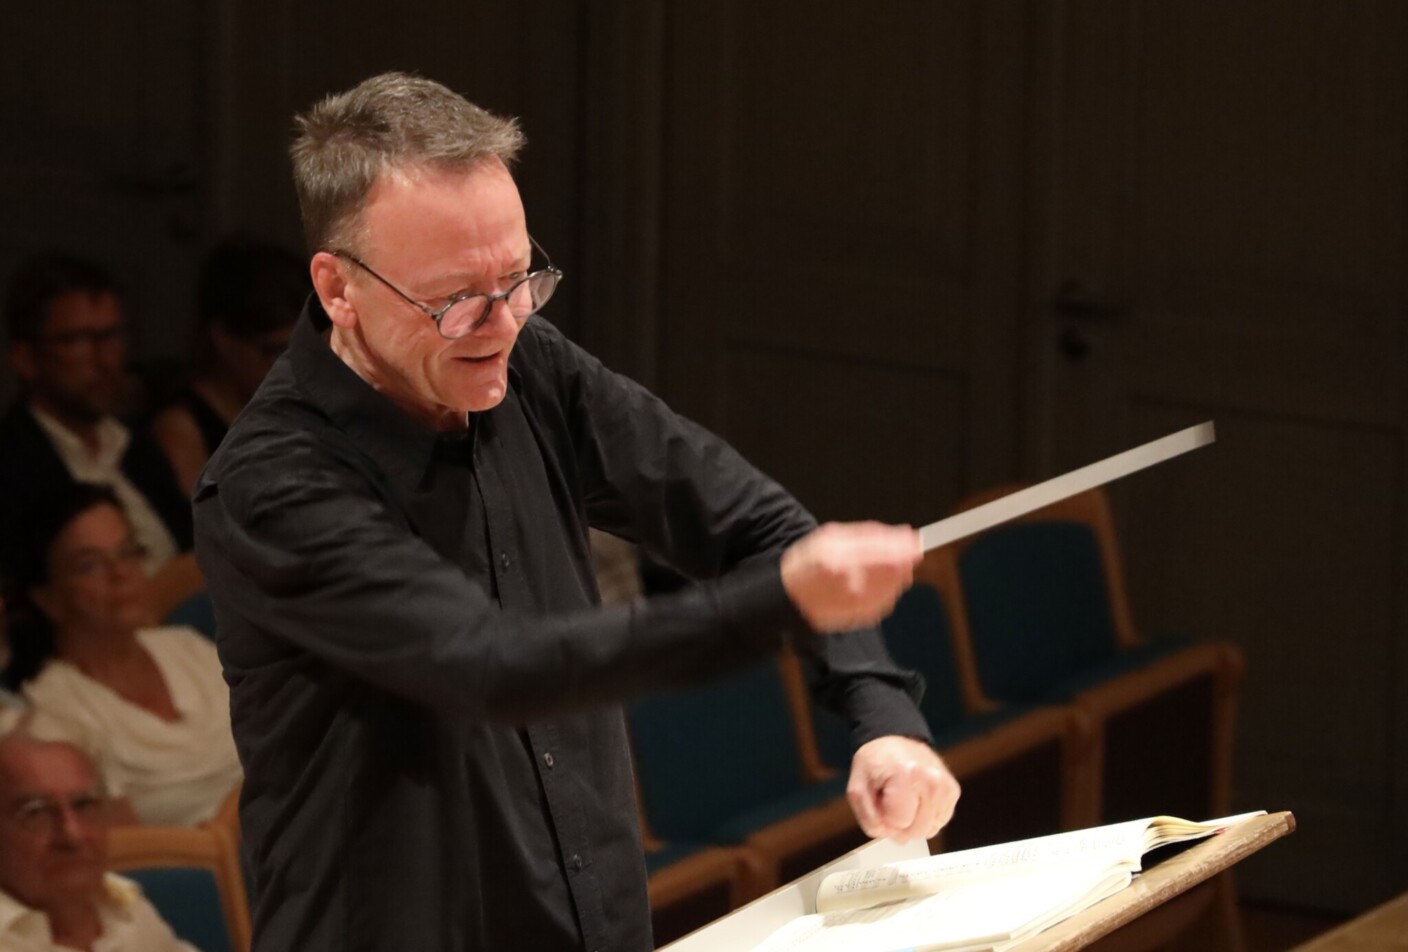 Festivalgründer Rudolf Lutz schlüpft in diesem Jahr in die Rolle des Komponisten